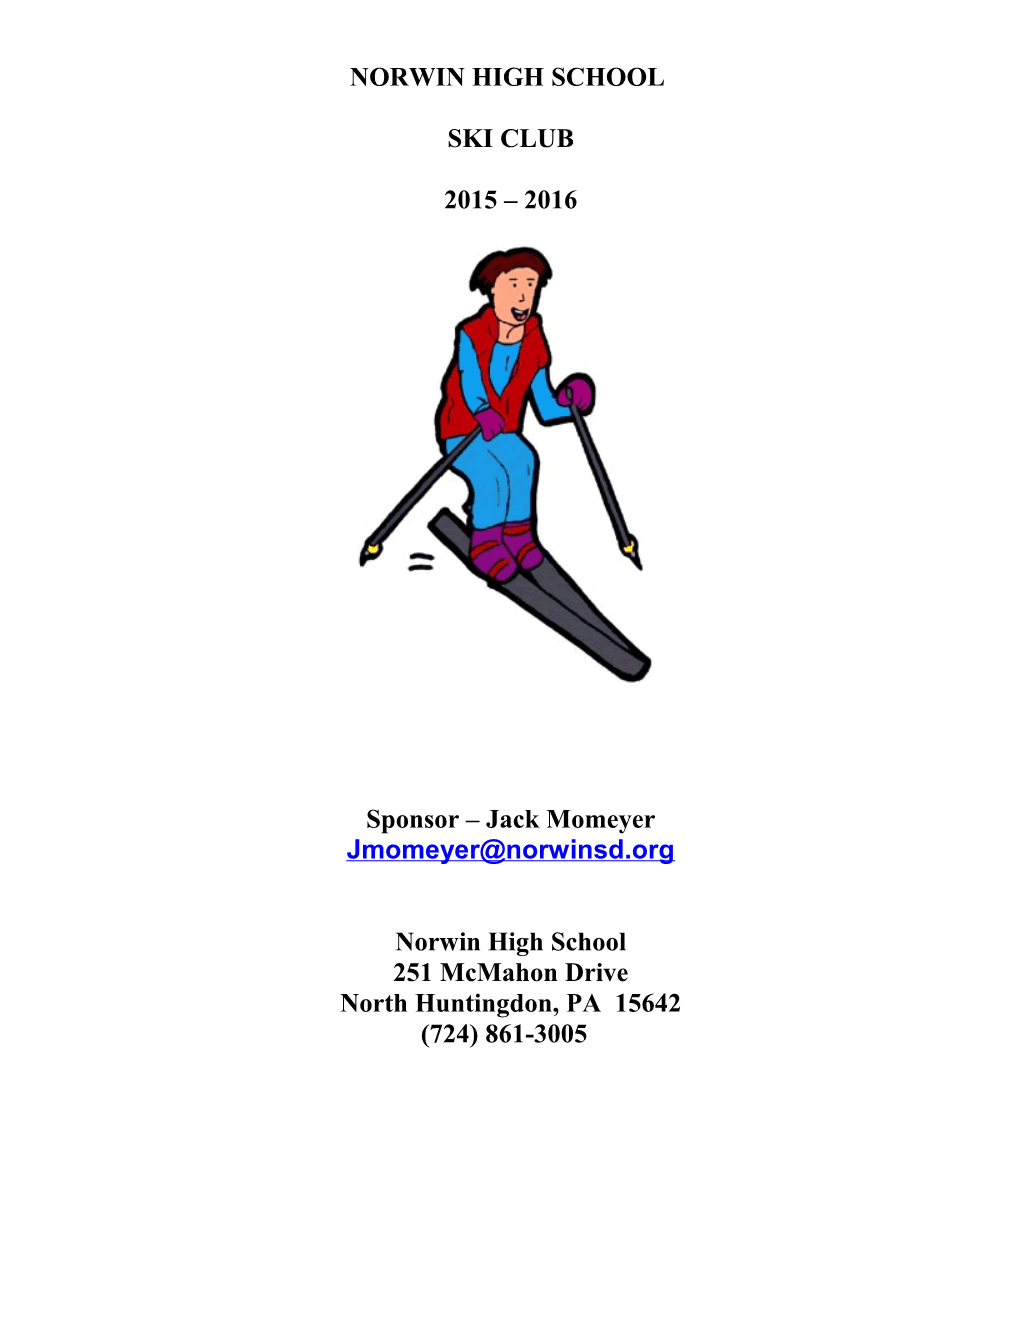 Norwin High School Ski Club